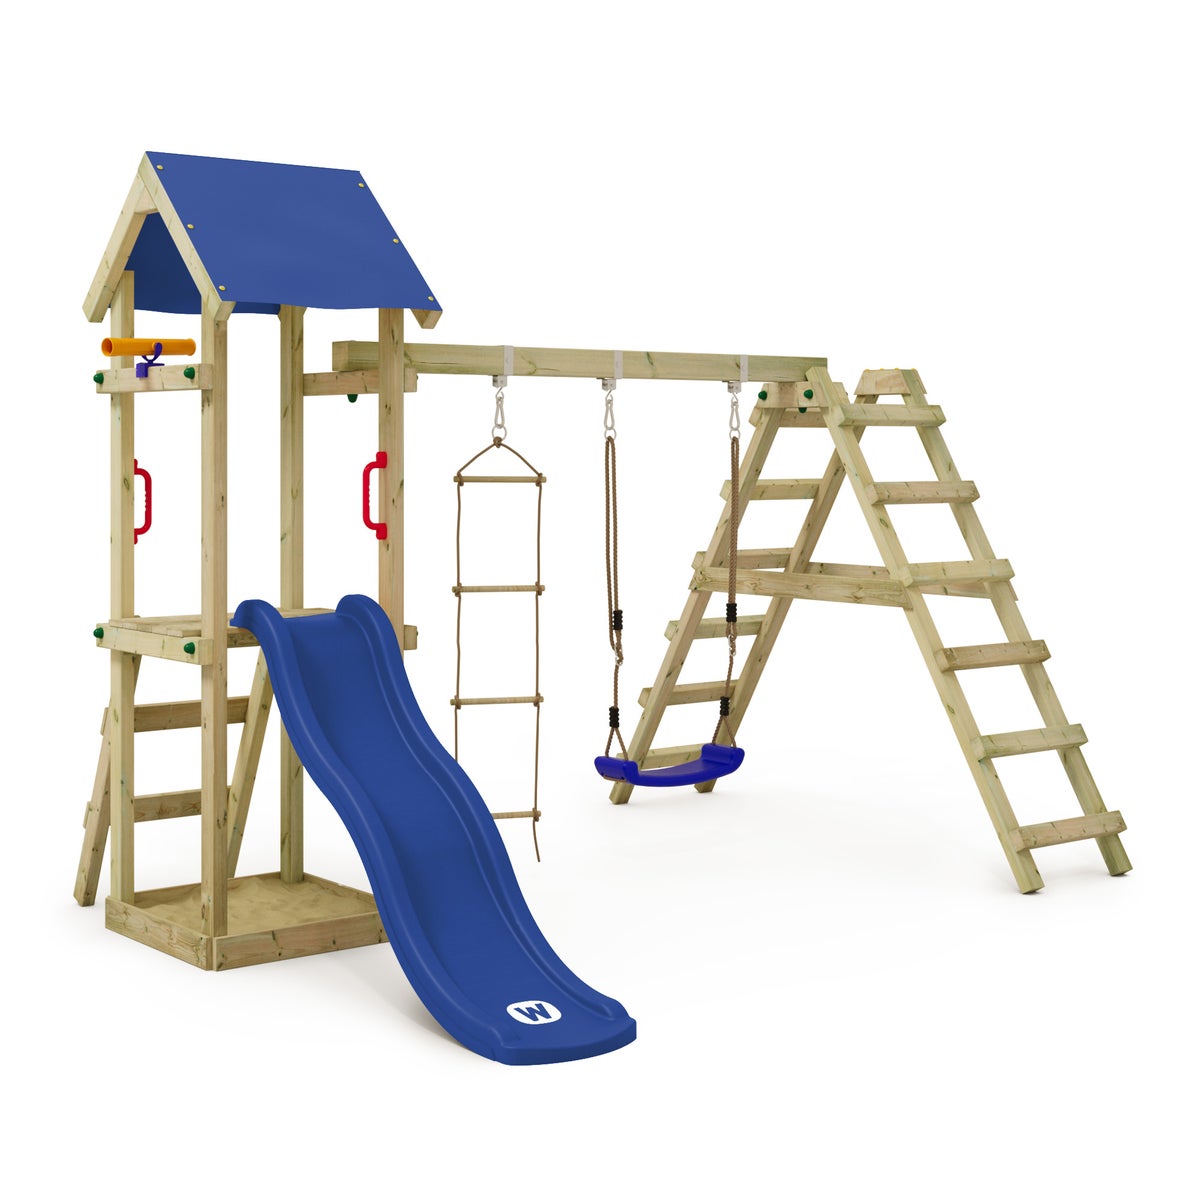 WICKEY Spielturm Klettergerüst TinyLoft mit Schaukel und Rutsche, Kletterturm mit Sandkasten, Leiter und Spiel-Zubehör - blau